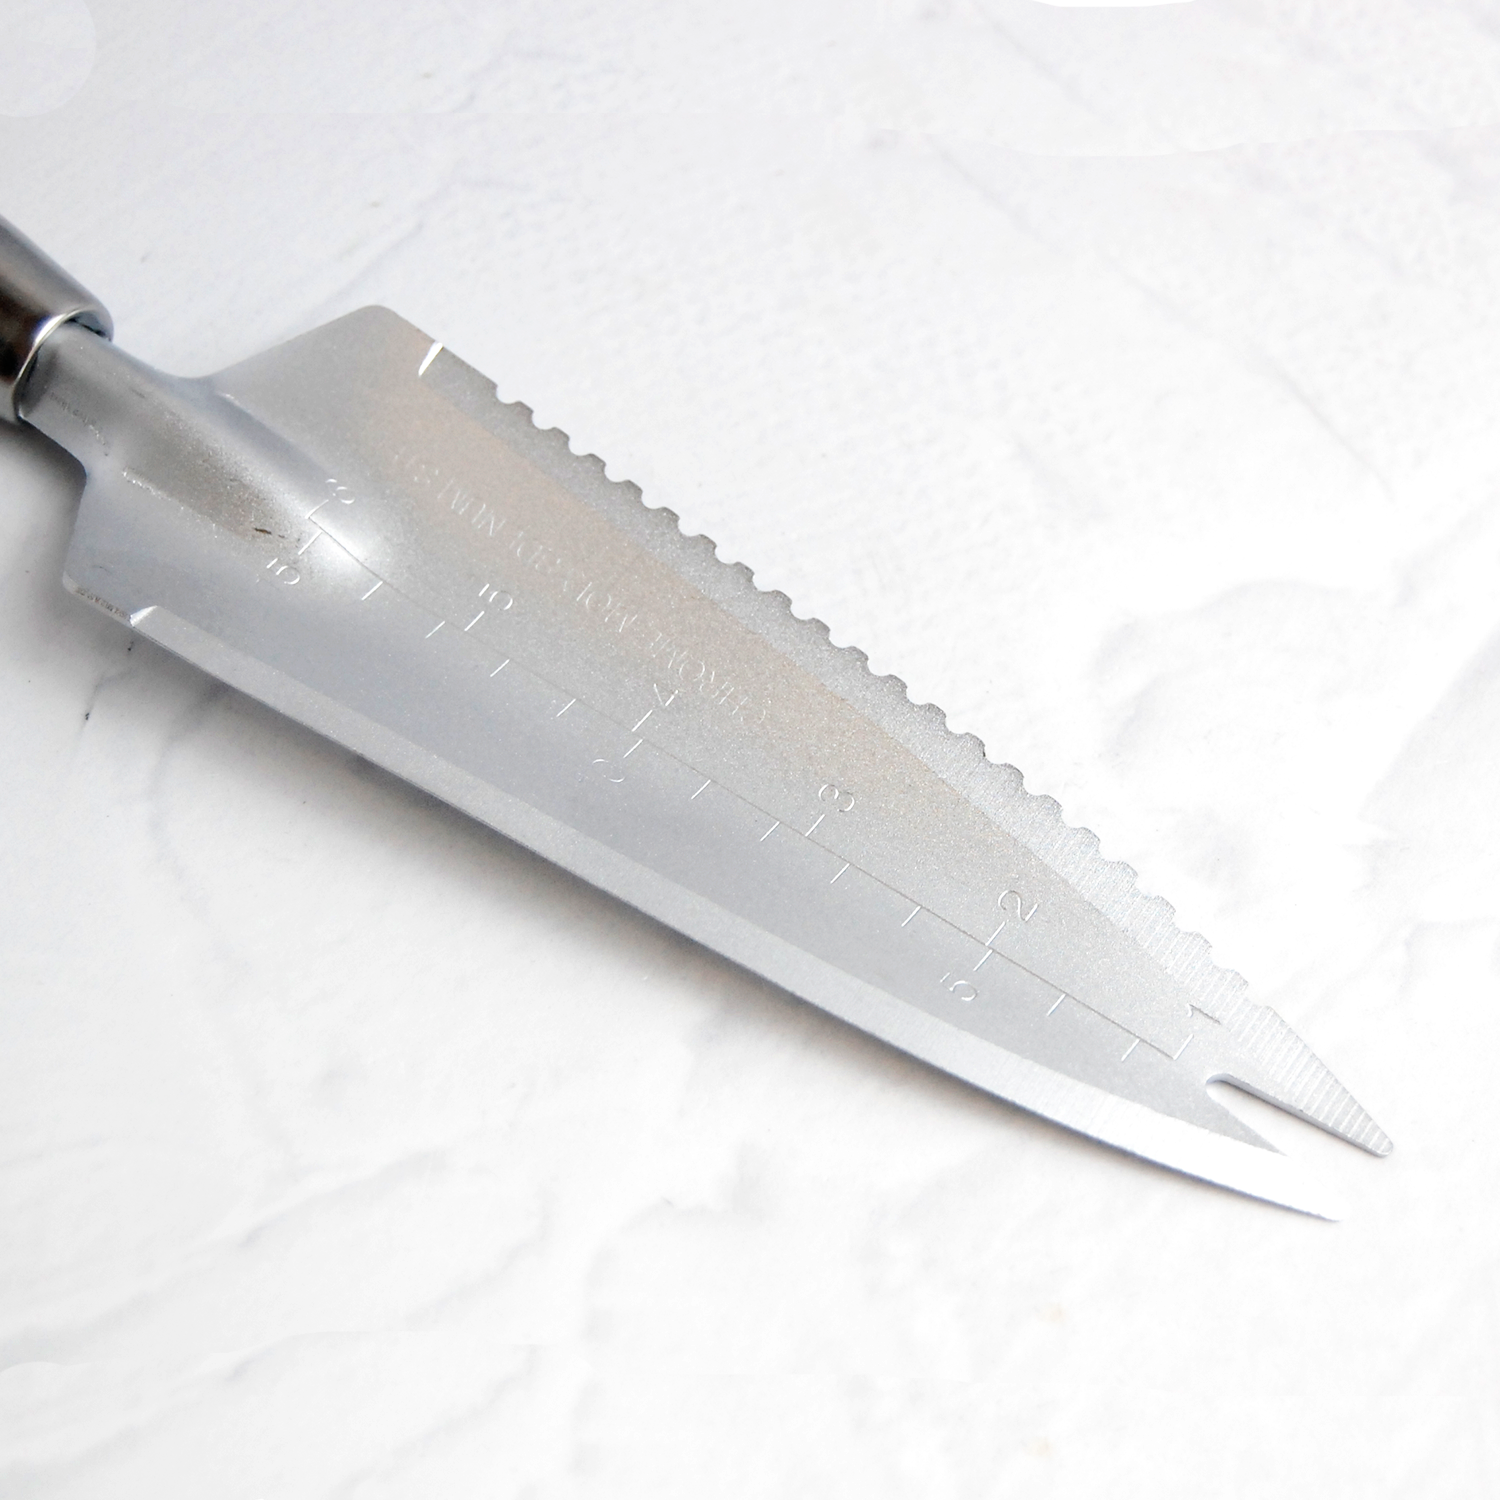 Нож для удаления сорняков 335мм с д/ручкой Cr-MO Skrab 28080